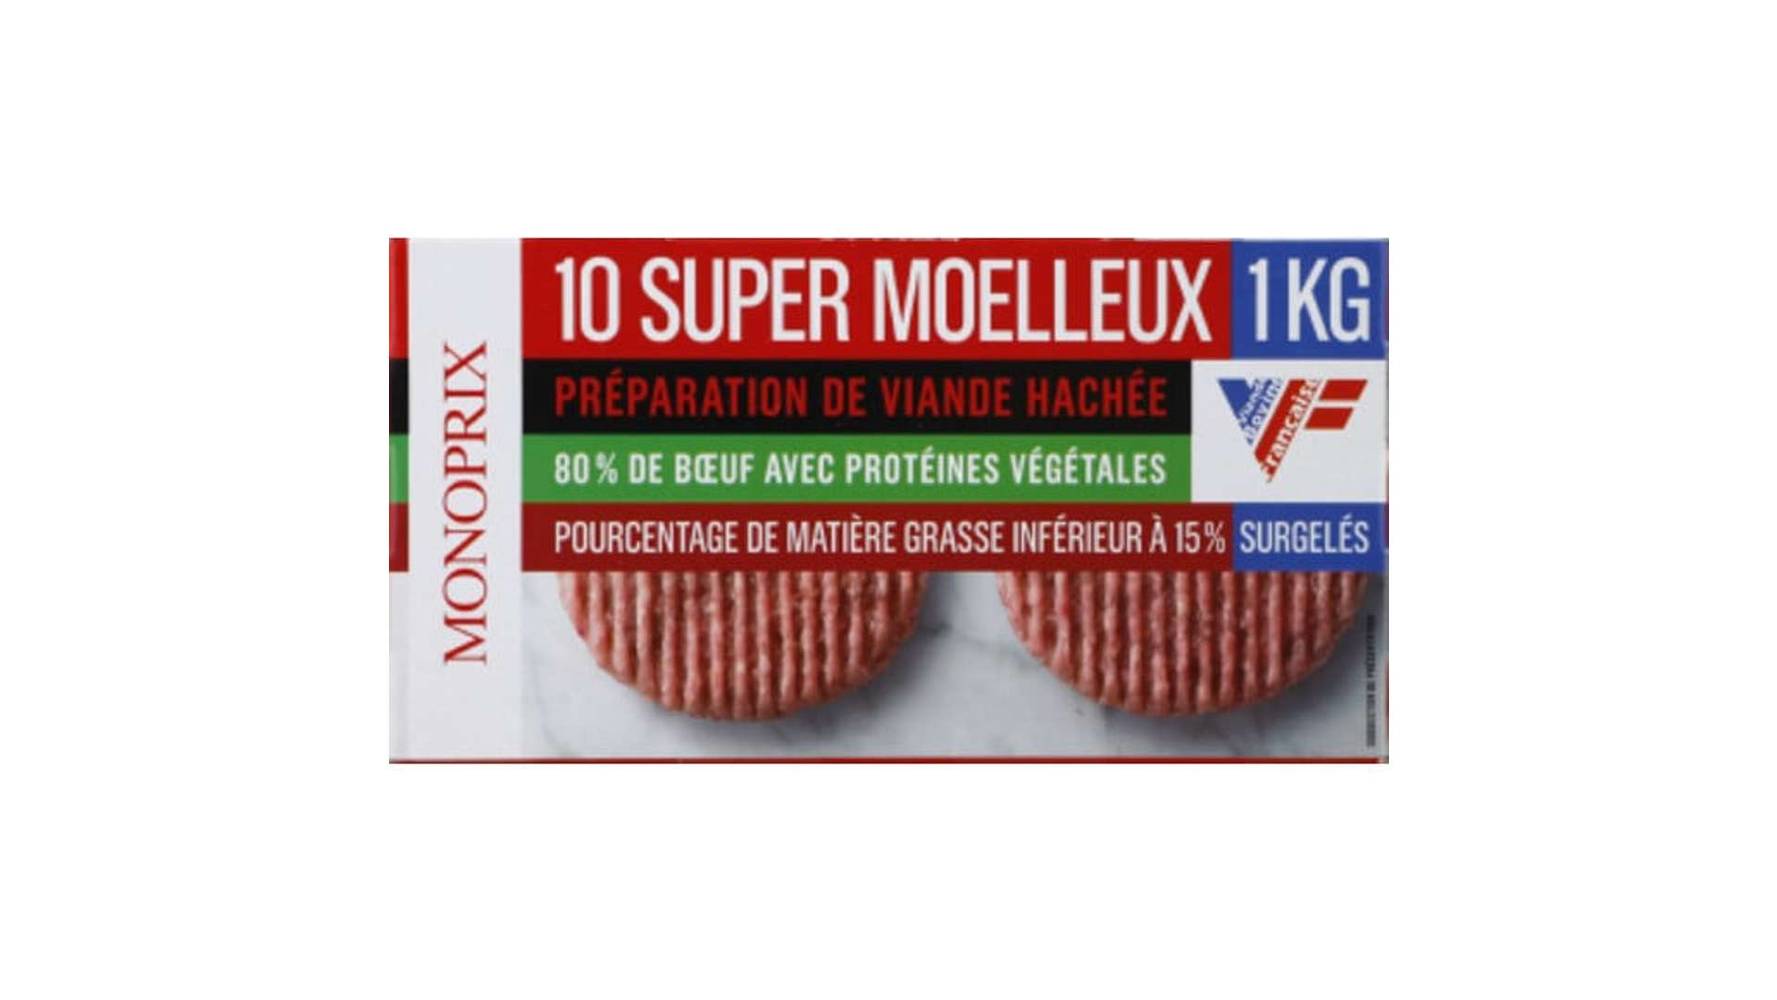 Monoprix - Préparation de viande hachée et super moelleux